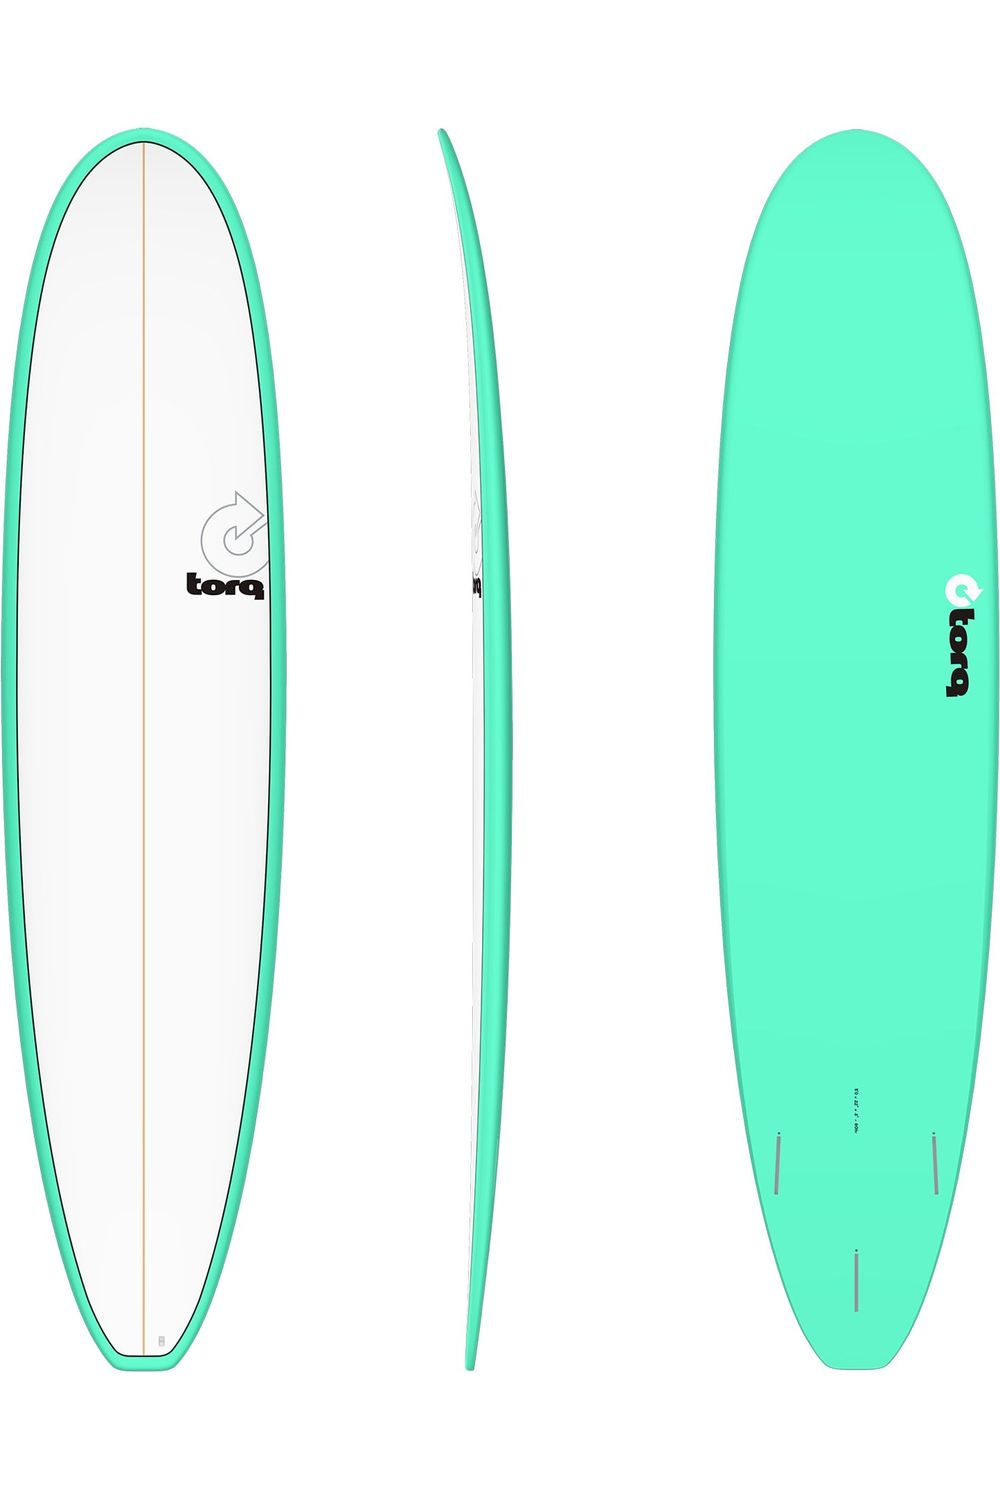 Torq TET Long Surfboard in Pinline Seagreen